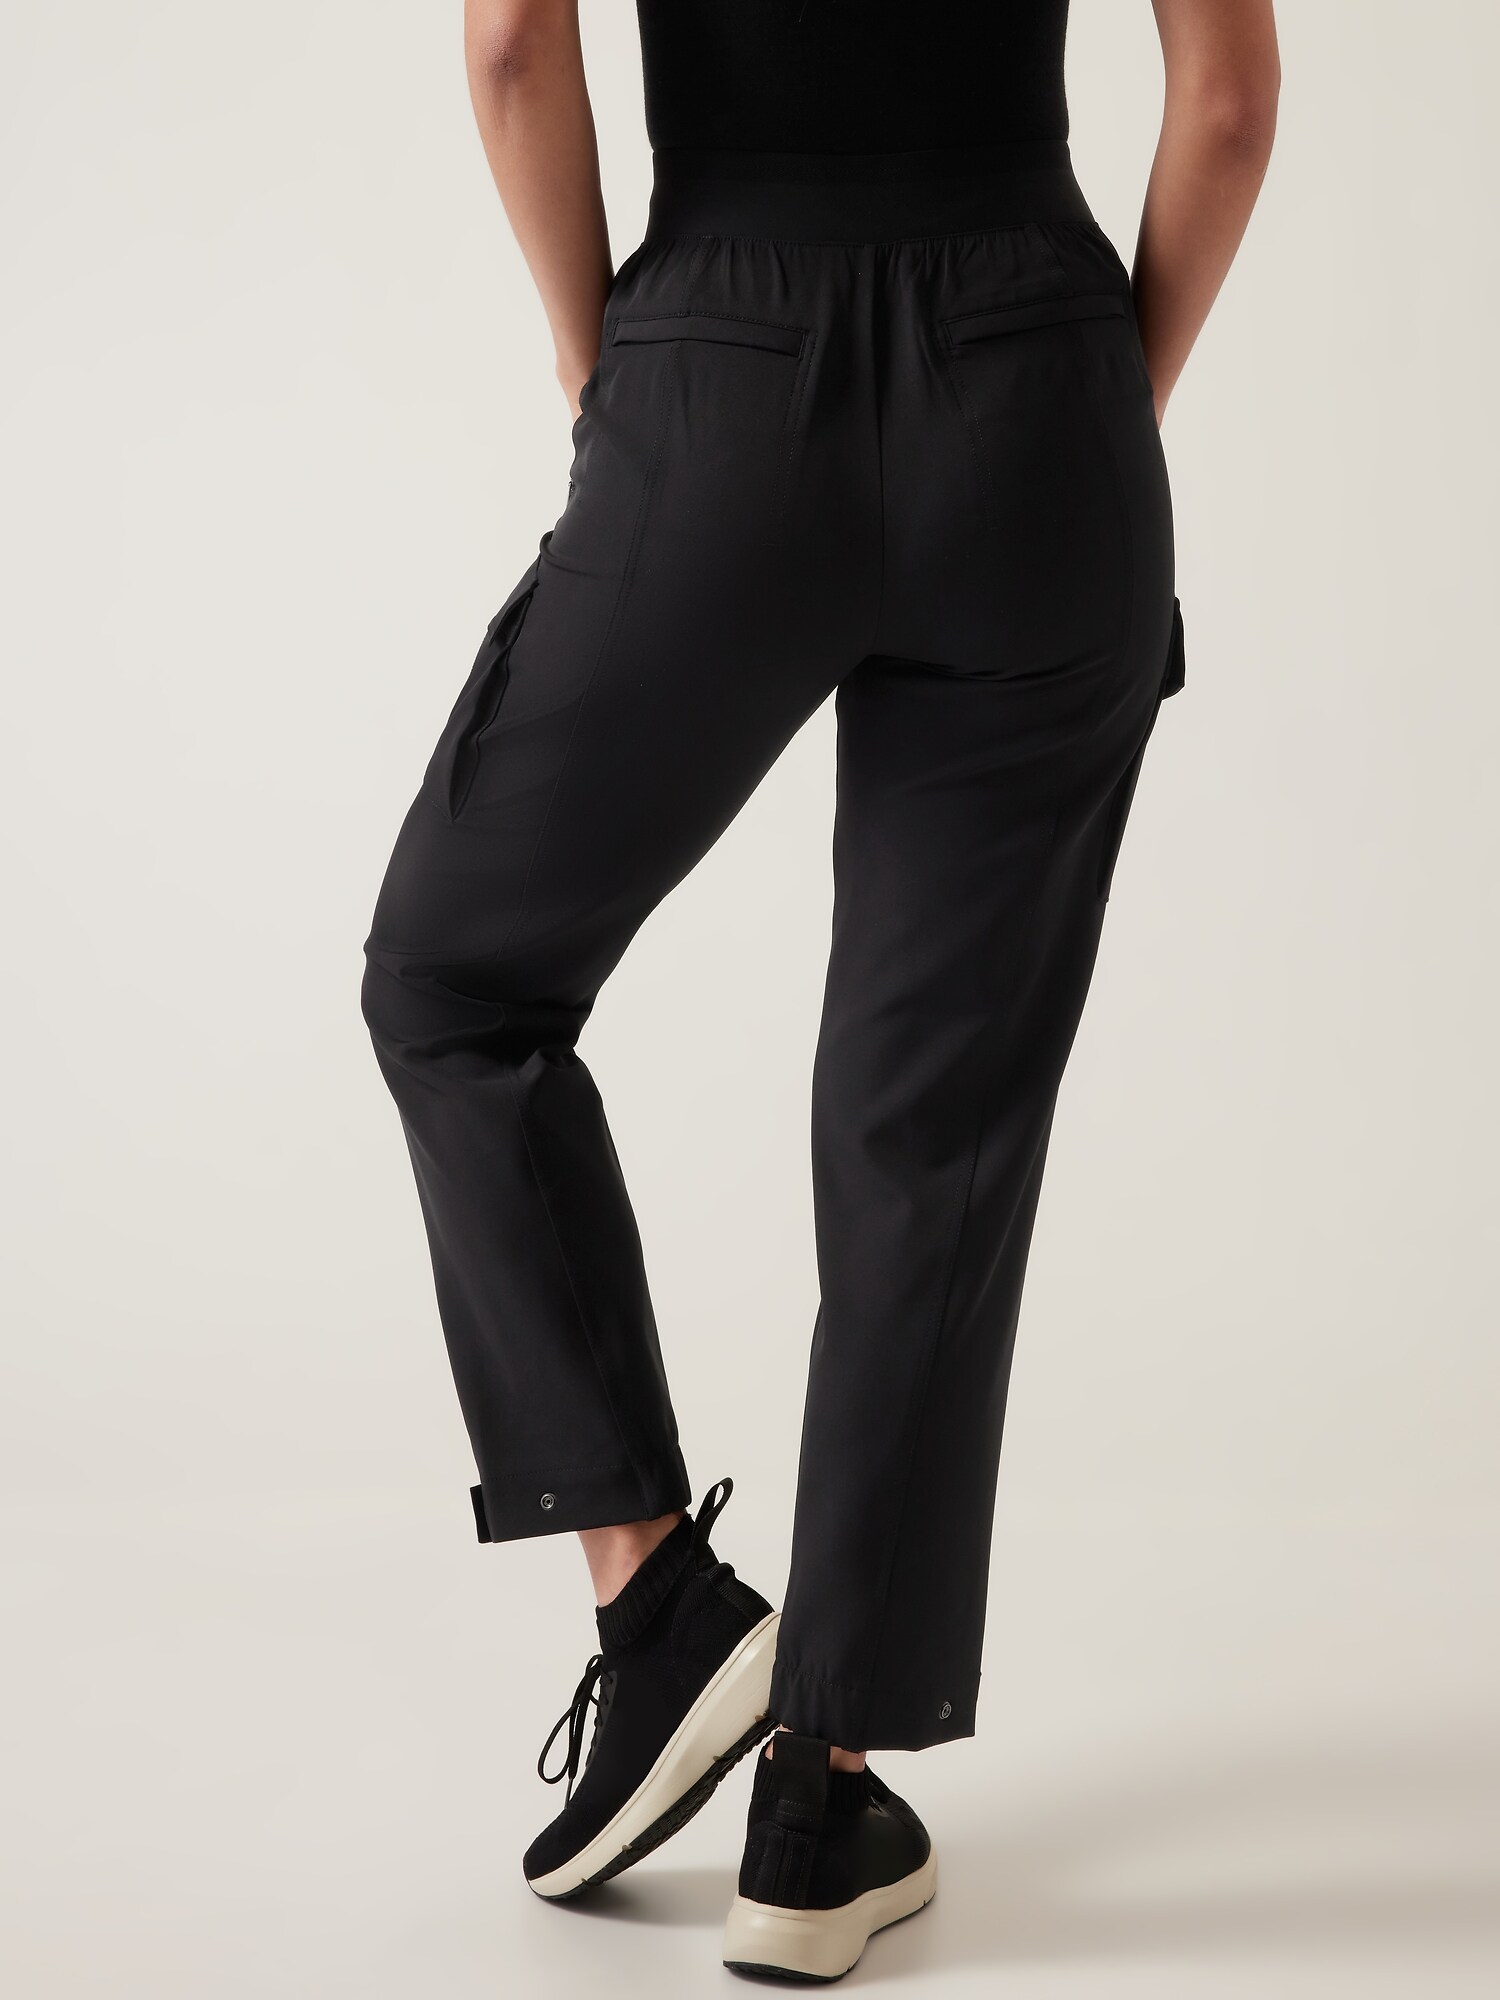 Lululemon Womens Black Commuter Travel Chino Zipper Pants Pockets Size 4